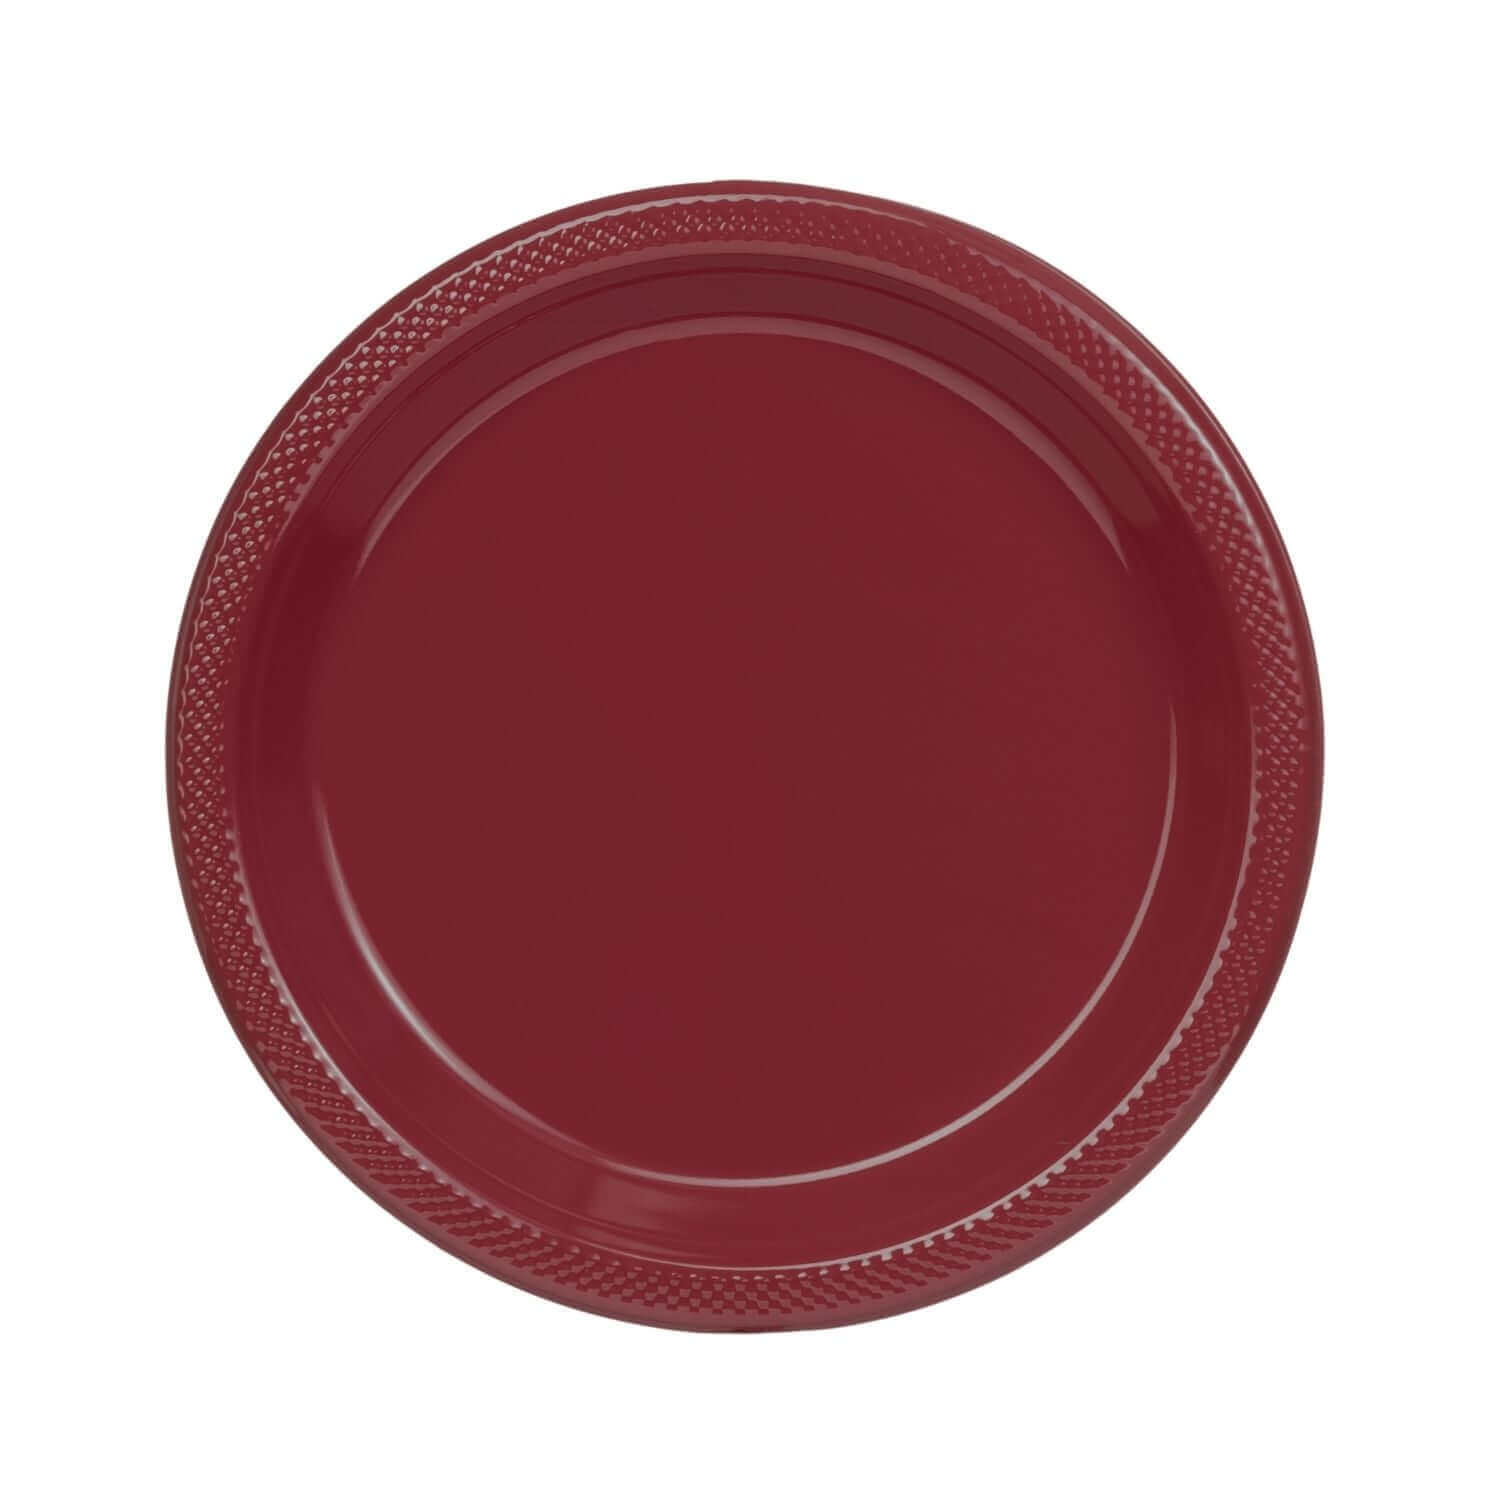 9" | Burgundy Plastic Plates | 600 Count - Yom Tov Settings